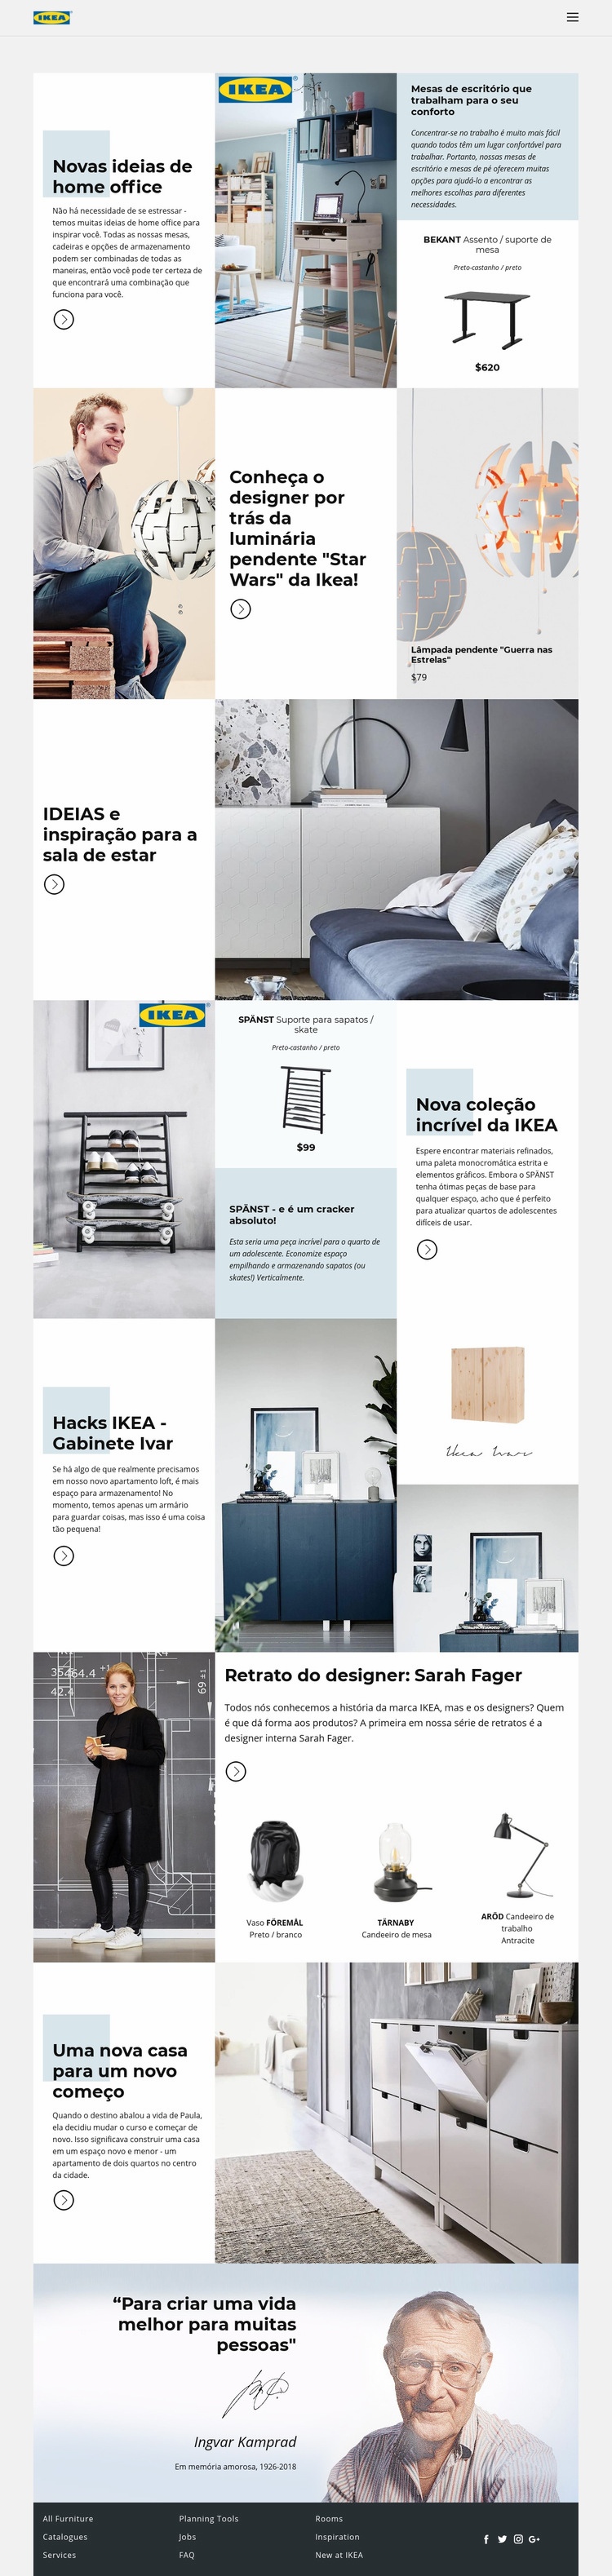 Inspiração da IKEA Design do site